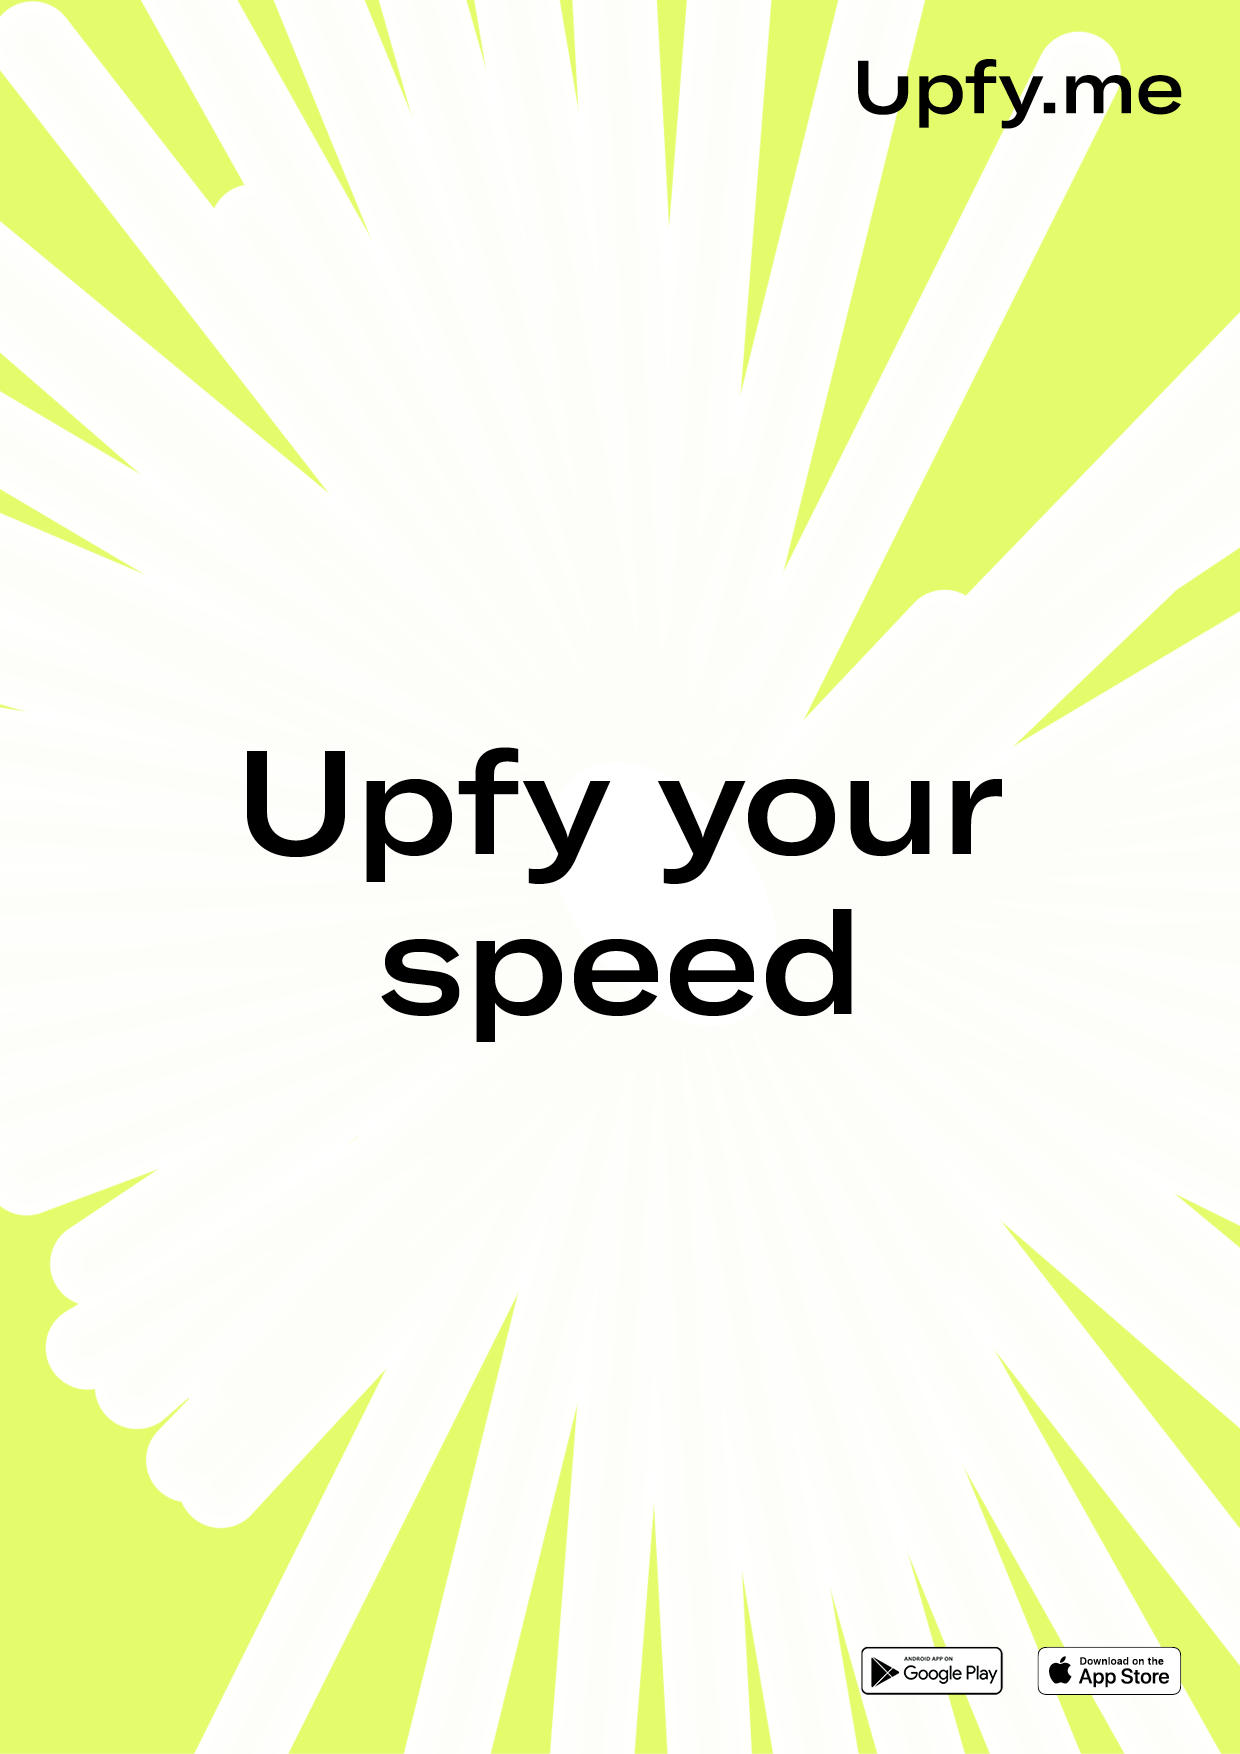 Upfy Running App Ad 011